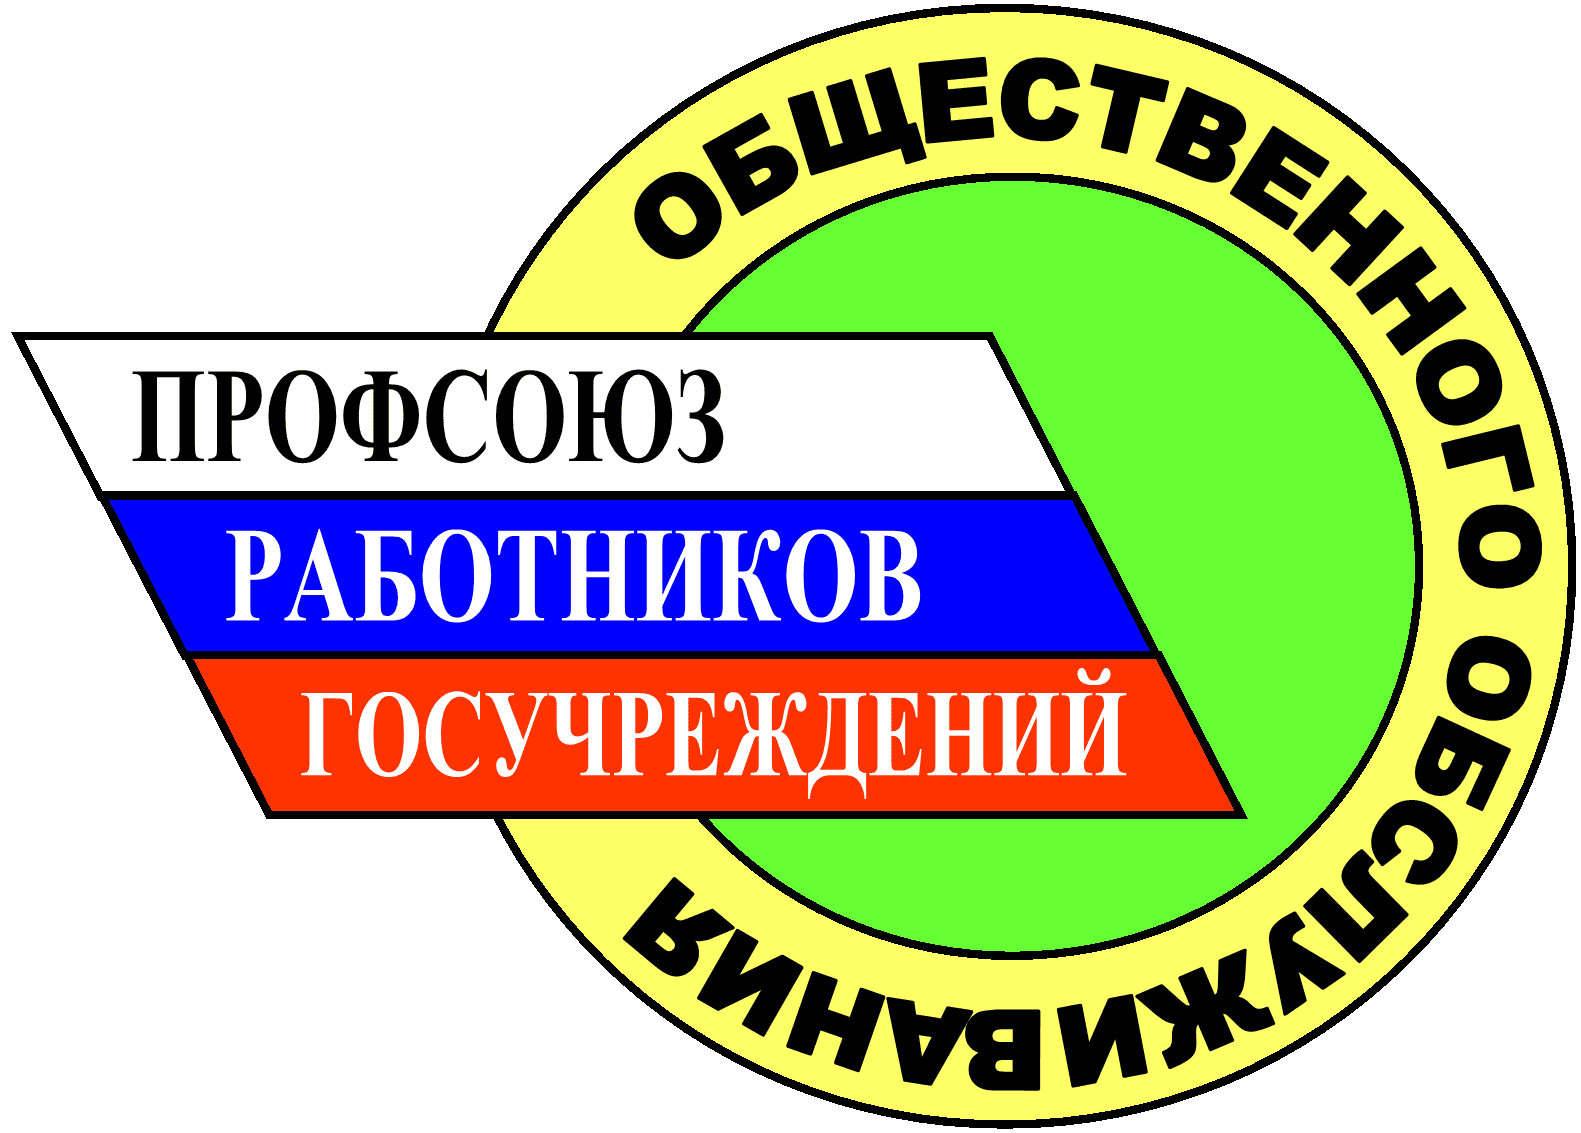 Профсоюзные организации в россии